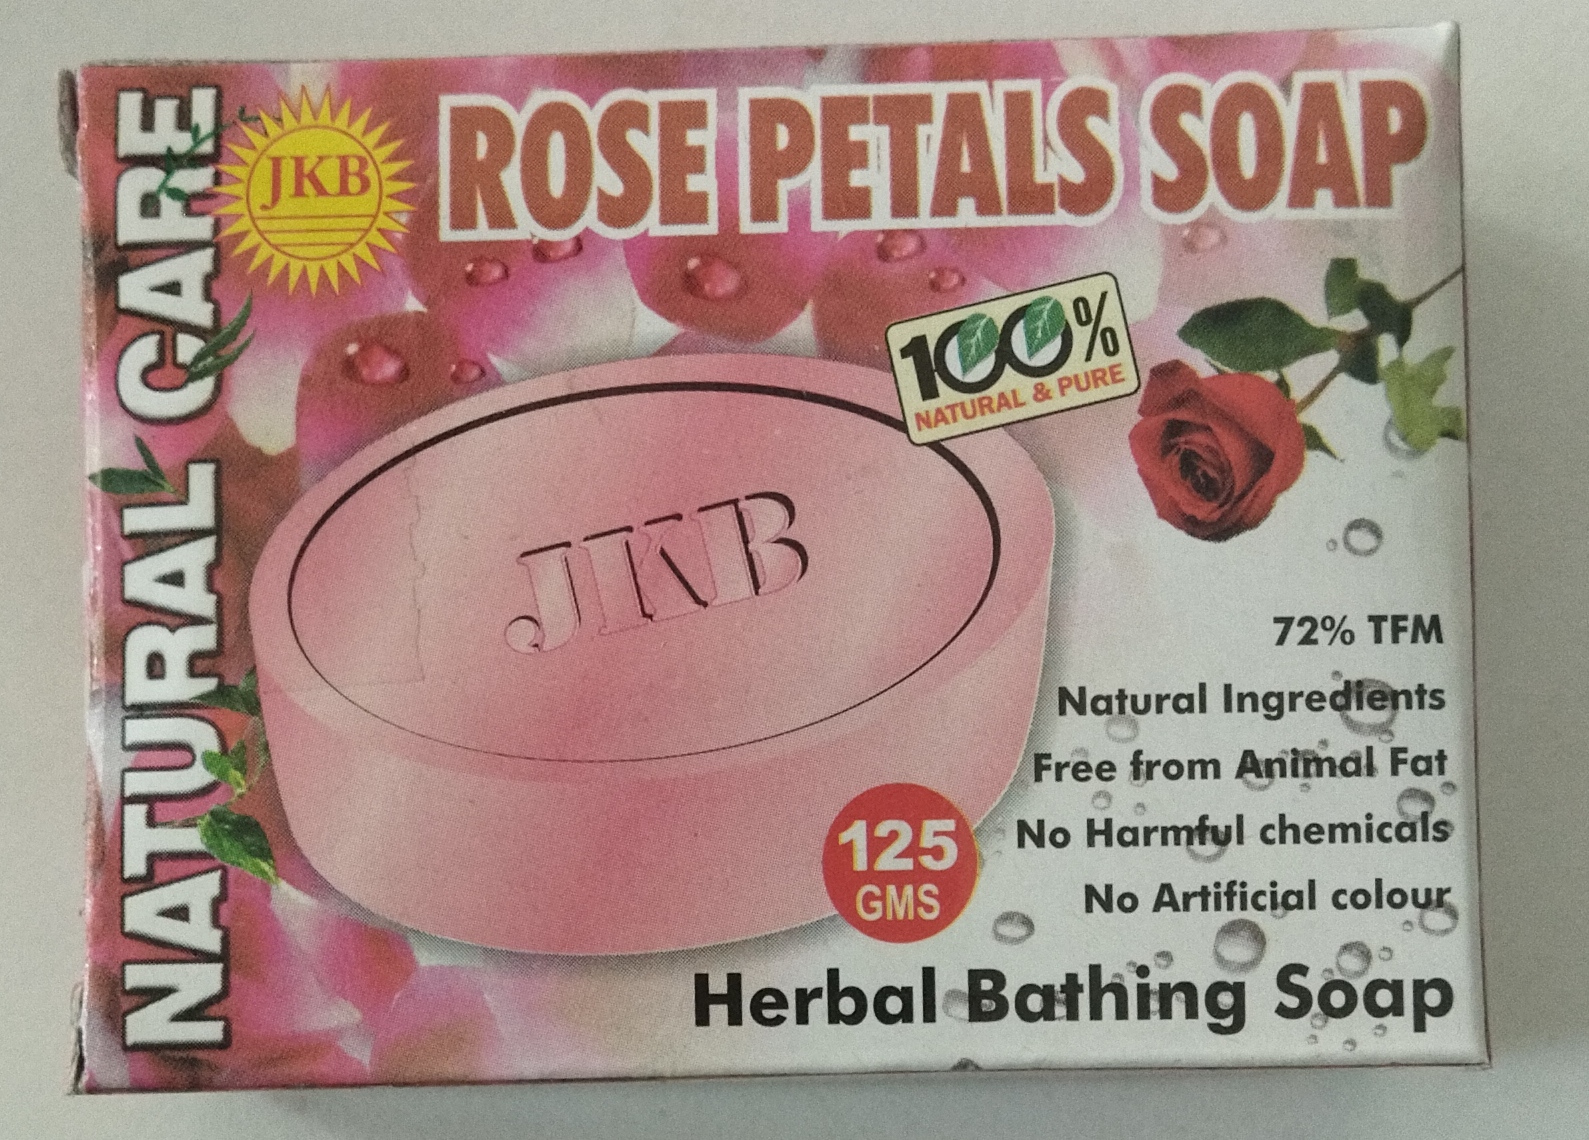 JKB Rose petals soap